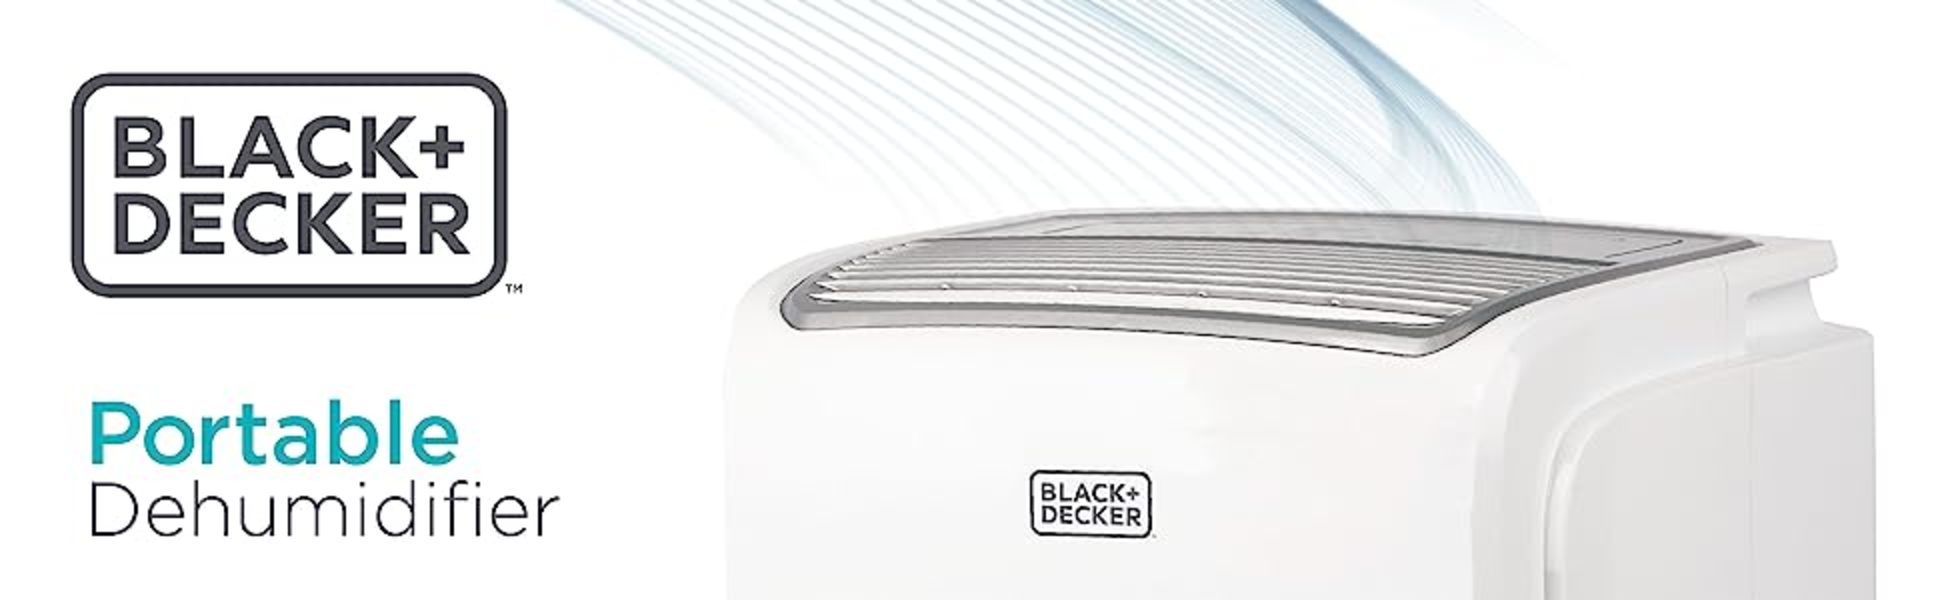 BLACK+DECKER BD50MWSA 50-Pint Portable Dehumidifier 